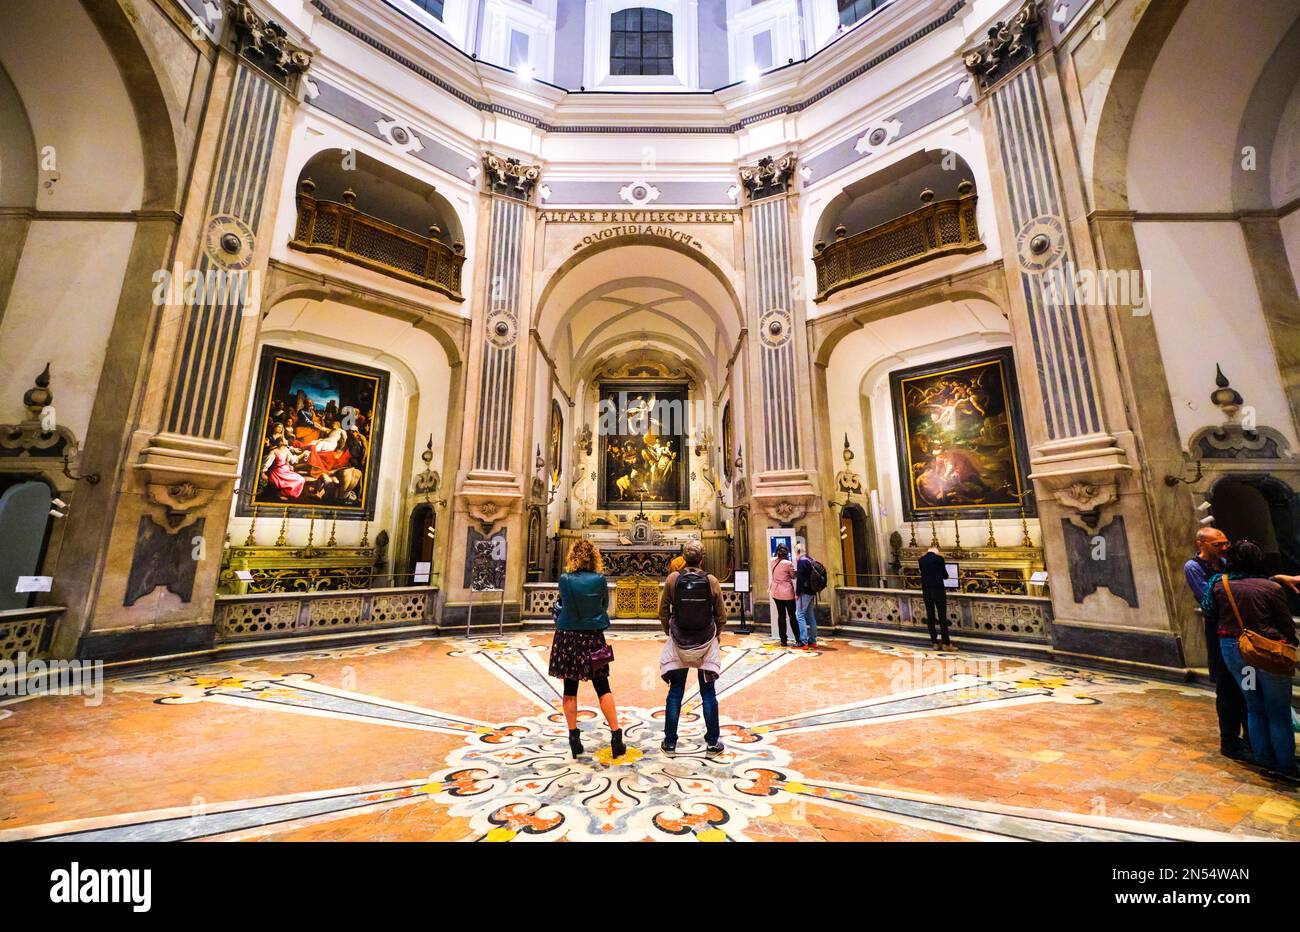 Personnes regardant la peinture du Caravaggio, les sept œuvres de la Miséricorde, dans la chapelle. Au Pio Monte della Misericordia à Naples, Naples, Italie, Italie Banque D'Images